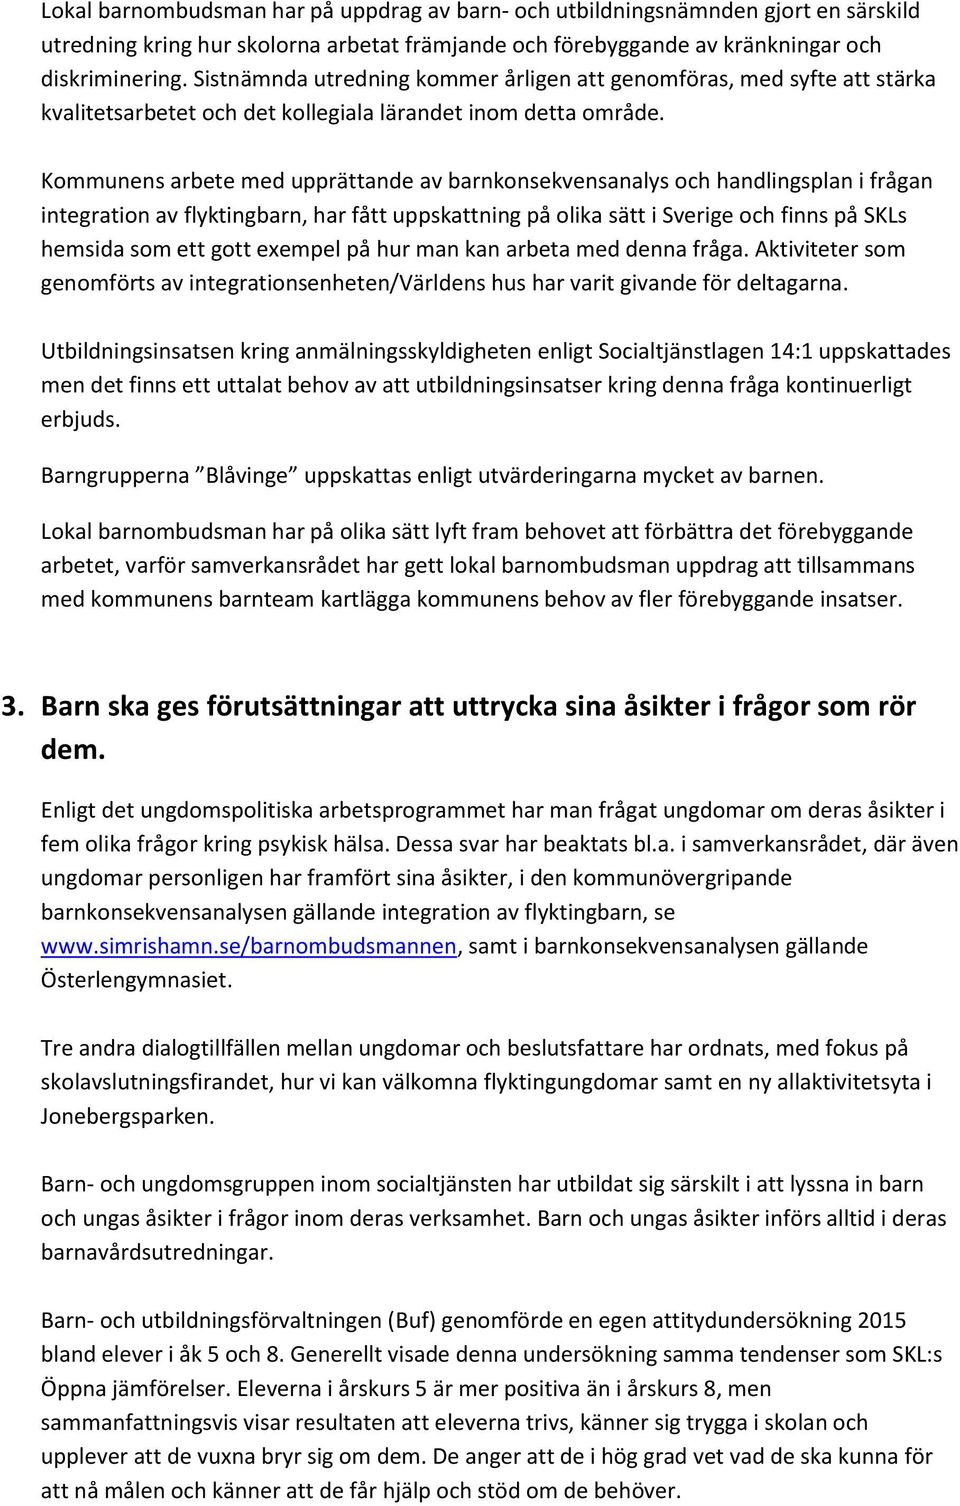 Kommunens arbete med upprättande av barnkonsekvensanalys och handlingsplan i frågan integration av flyktingbarn, har fått uppskattning på olika sätt i Sverige och finns på SKLs hemsida som ett gott